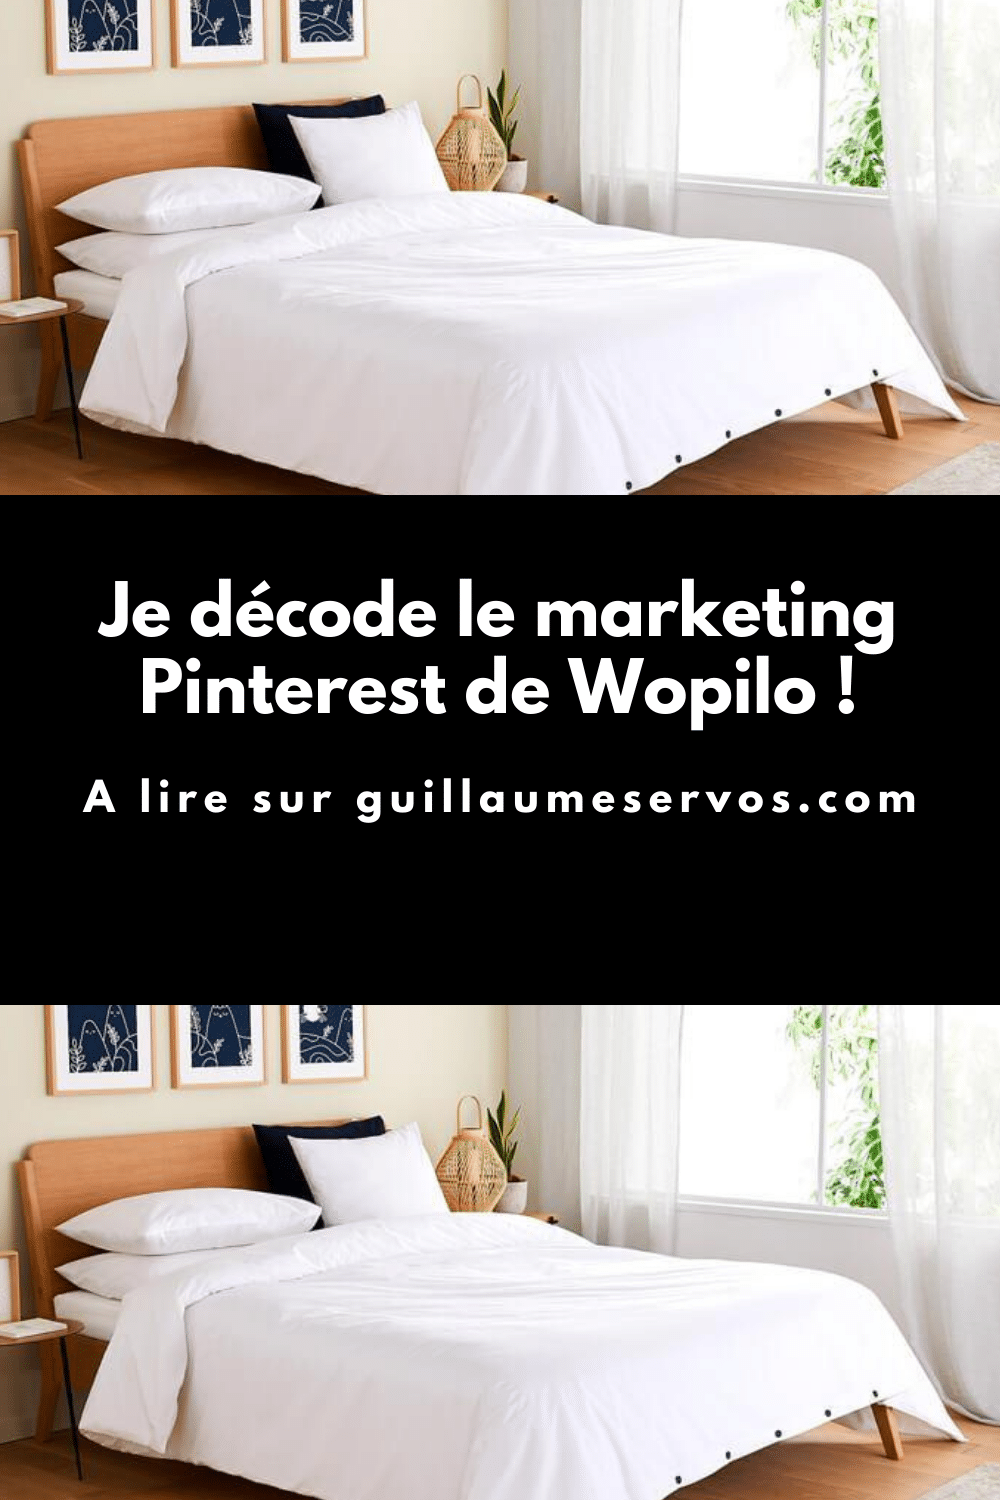 Comment Wopilo utilise Pinterest pour son business ? Je décode le Pinterest marketing de la marque d'oreiller française qui s'engage à améliorer nos nuits.